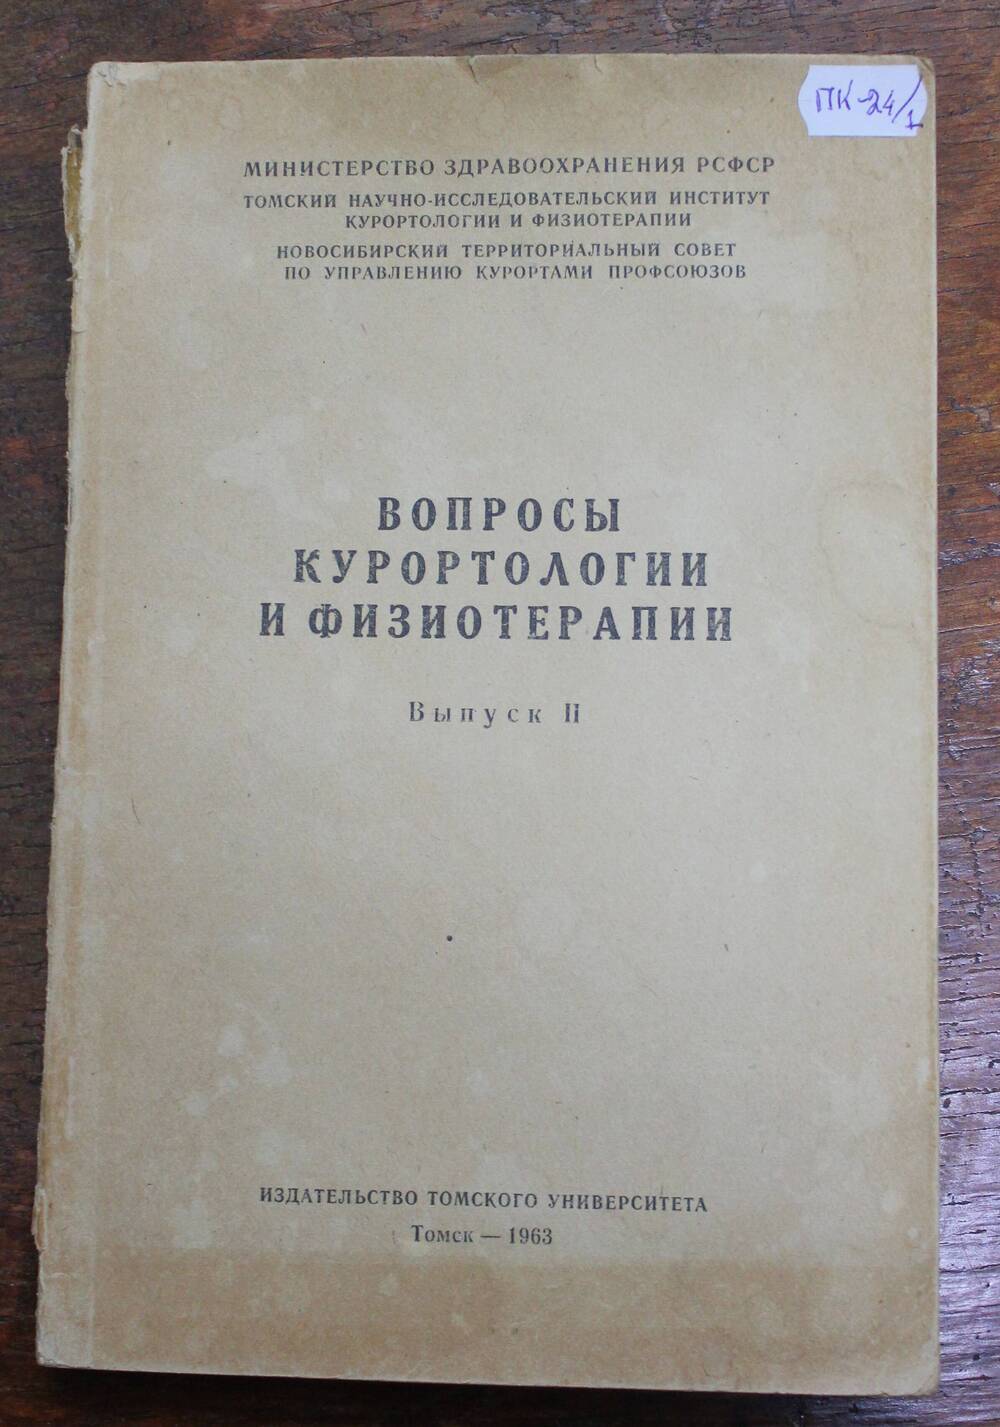 Книга Вопросы курортологии и физиотерапии, г. Томск, 1963г.